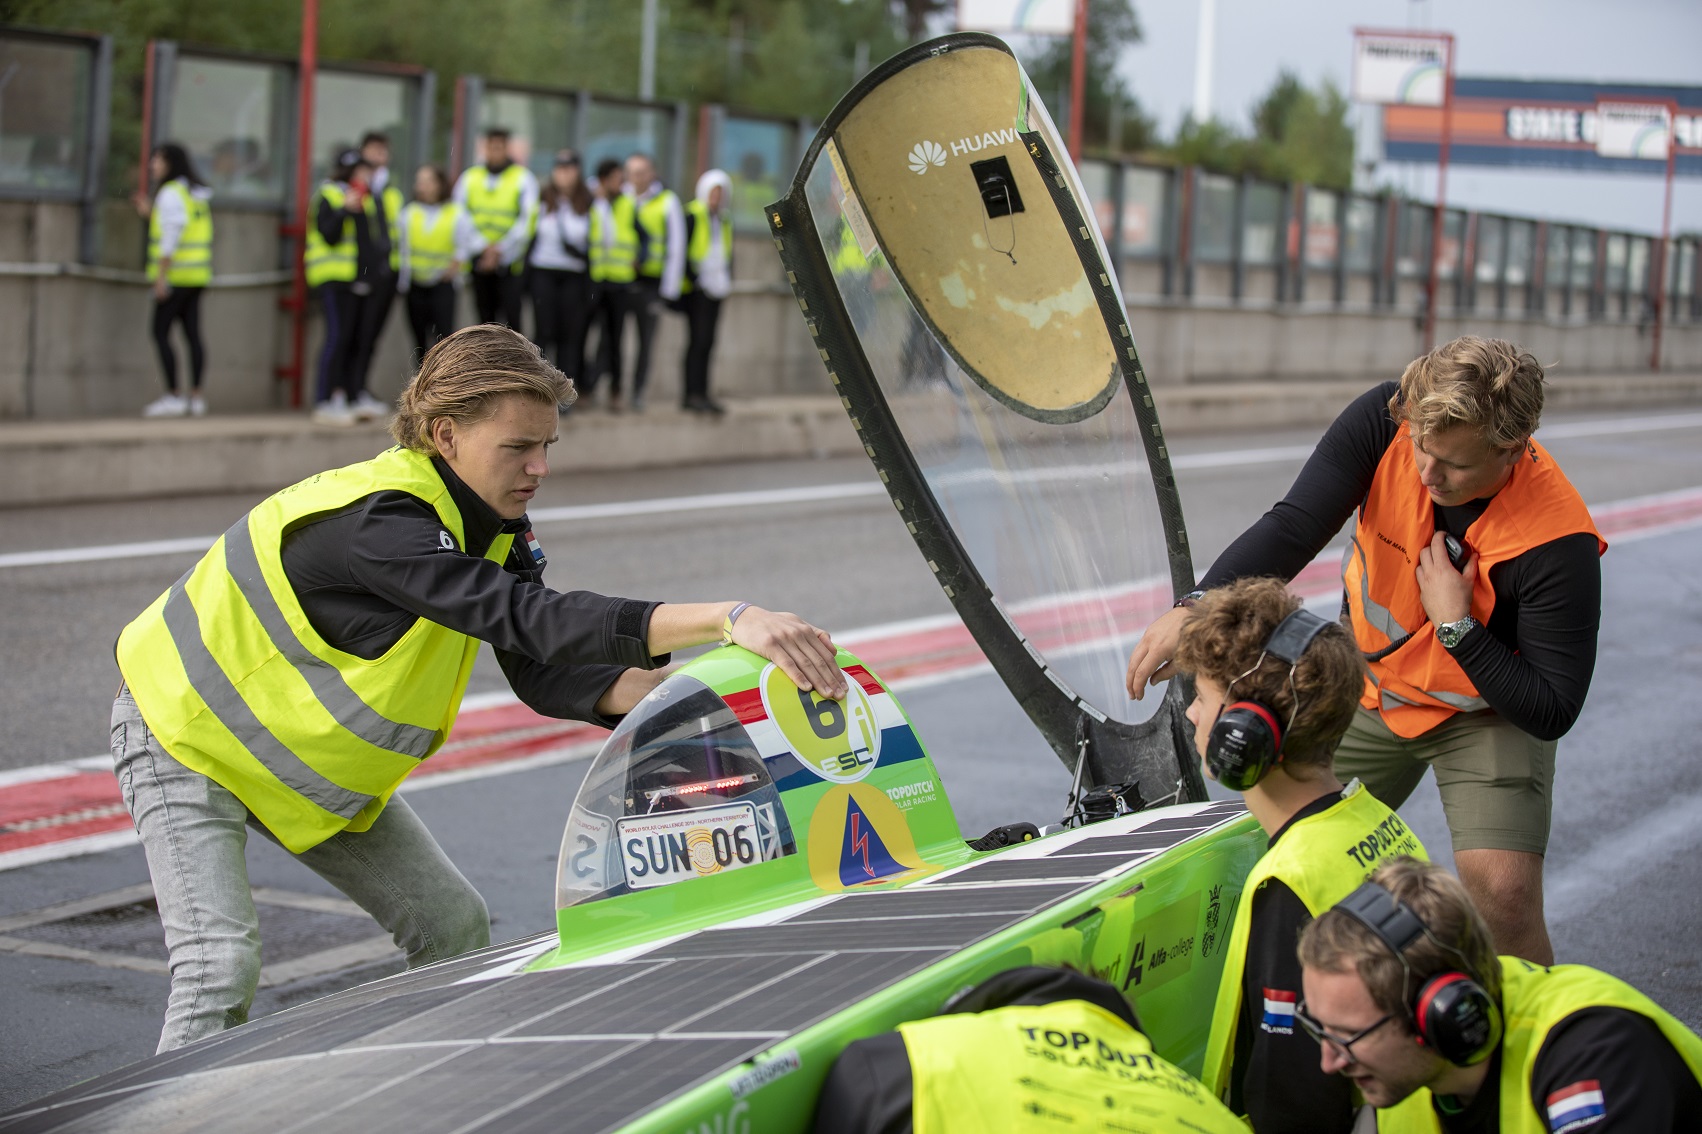 Fotoimpressie van het Top Dutch Solar Racing team in de iESCPhoto impression of the Top Dutch Solar Racing team in the iESC